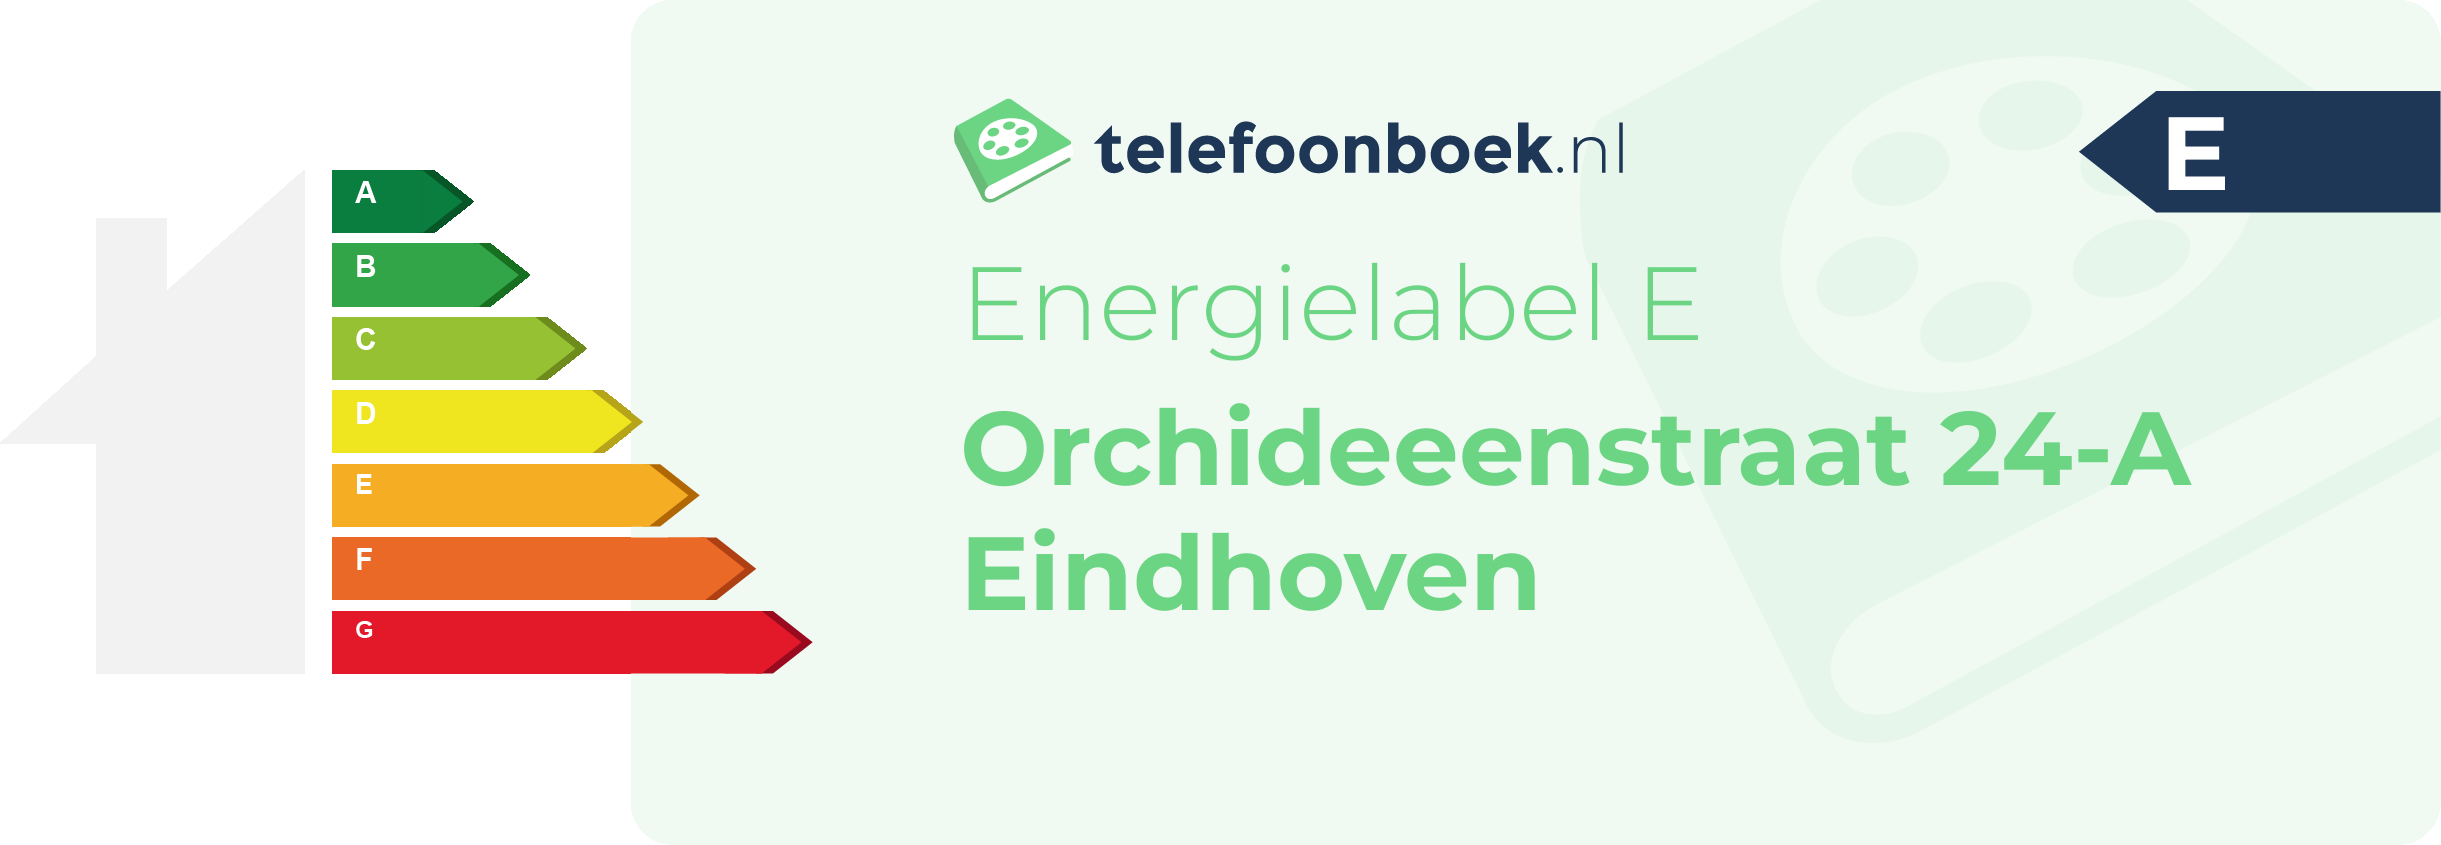 Energielabel Orchideeenstraat 24-A Eindhoven